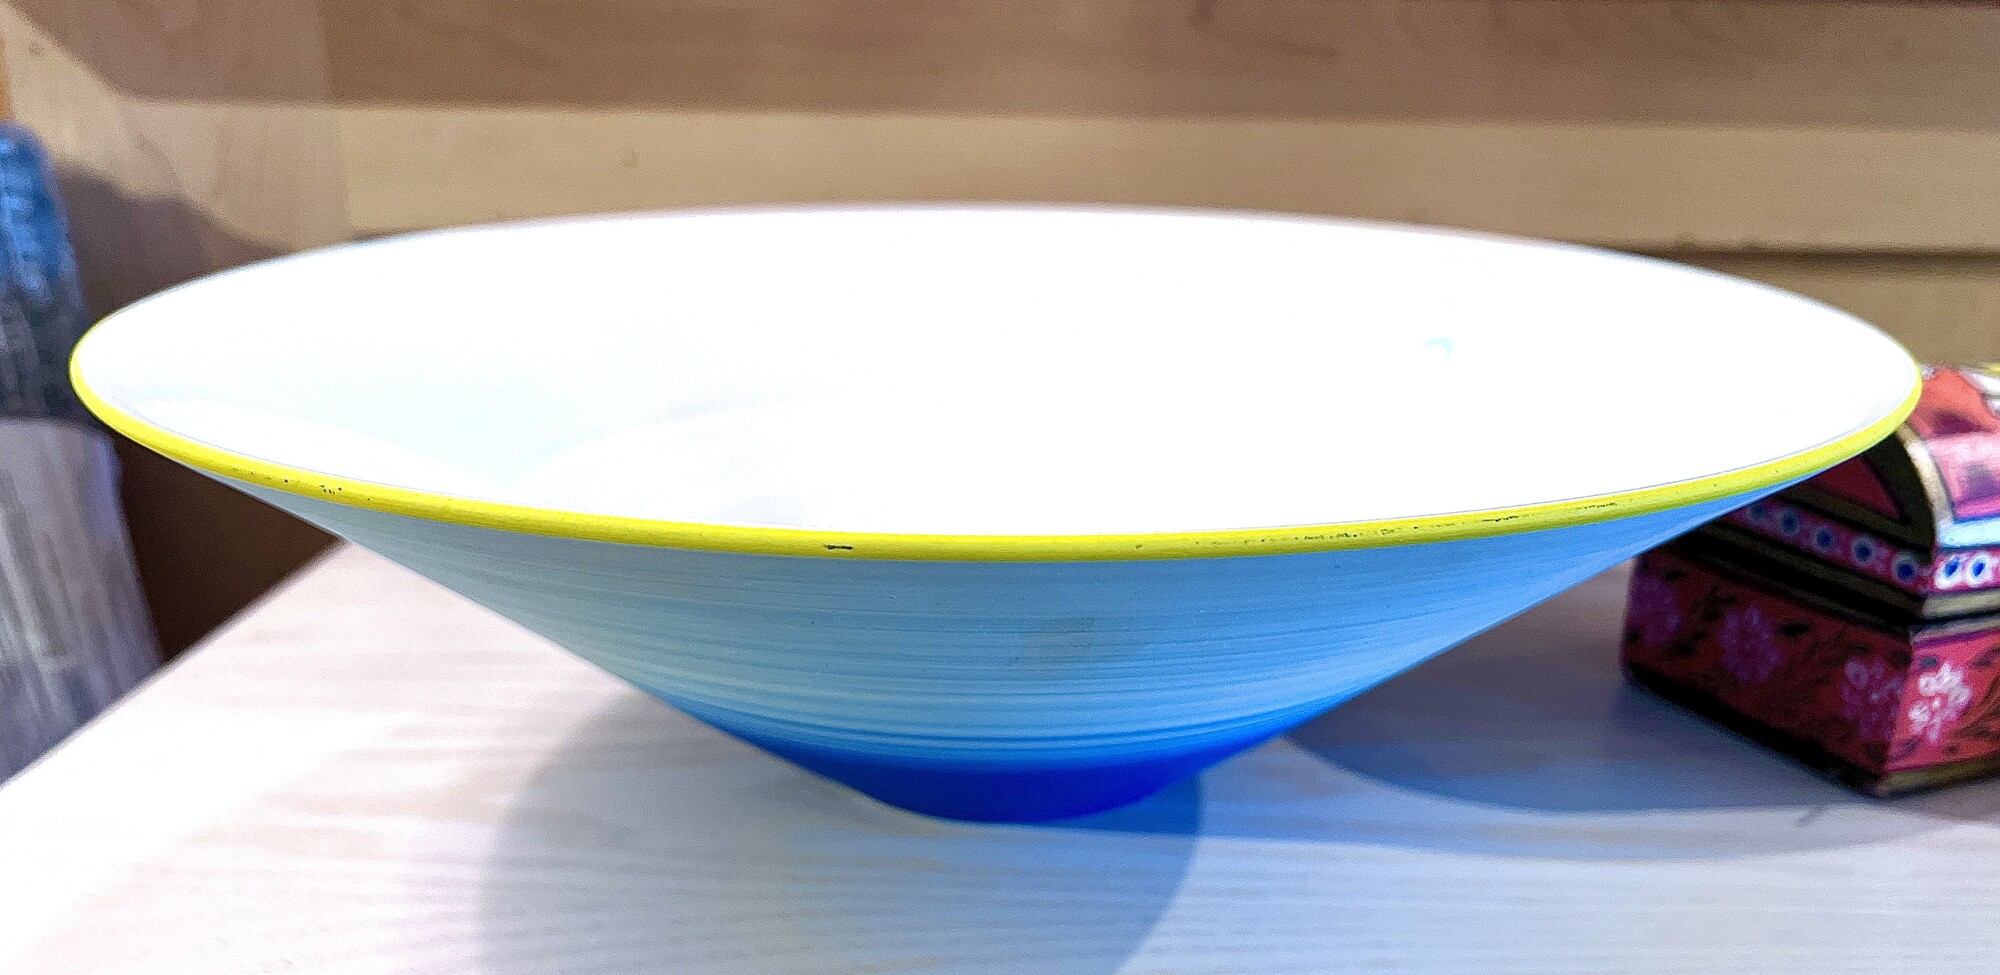 Ceramic Bowl
Size: 14\"R